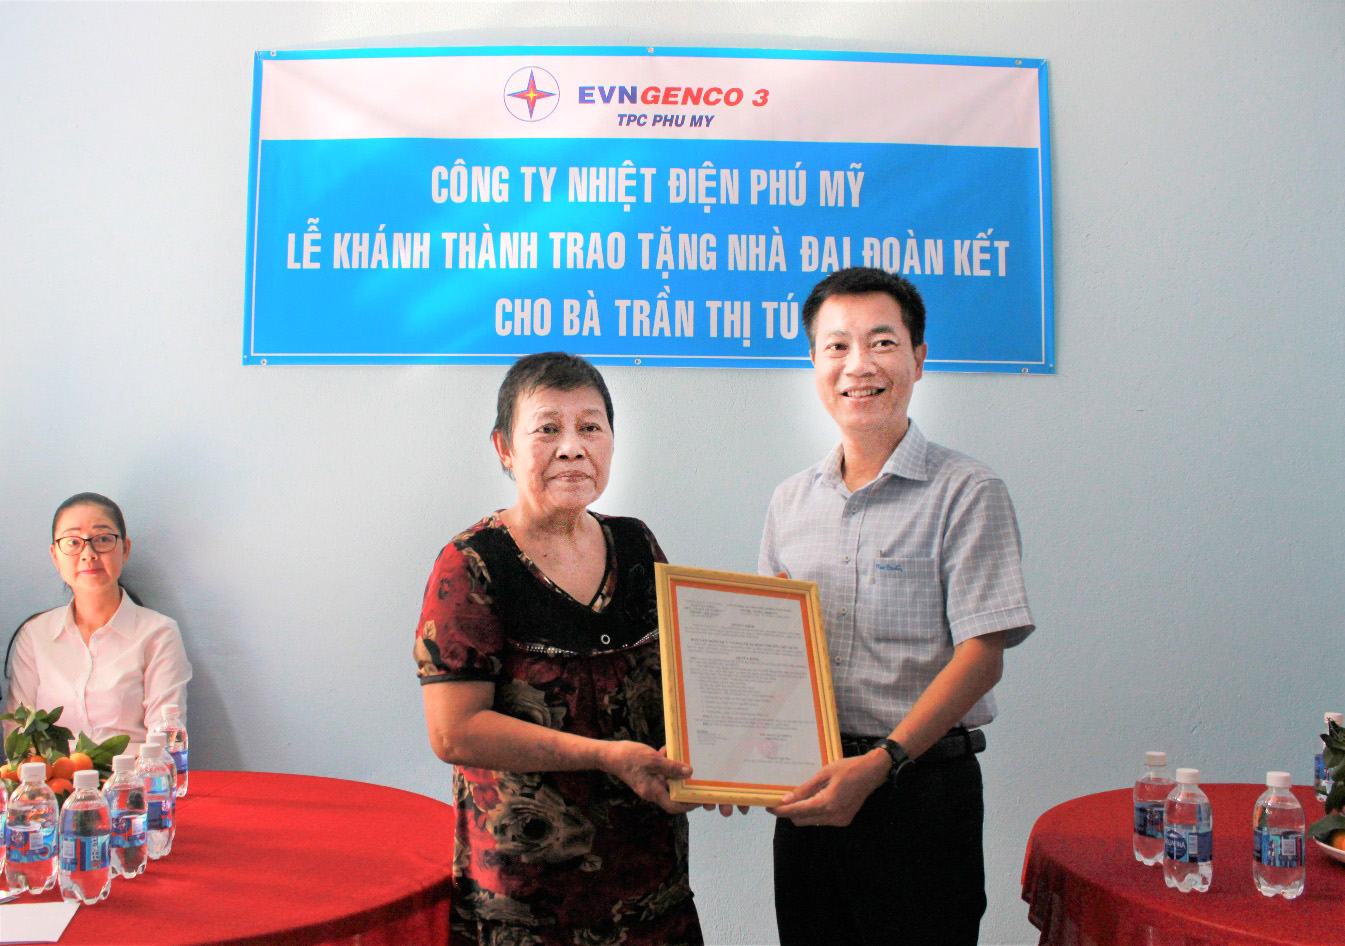 Ông Nguyễn Xuân Hiệp, Phó Giám đốc, Chủ tịch Công đoàn Công ty Nhiệt điện Phú Mỹ trao nhà cho bà Trần Thị Tú.